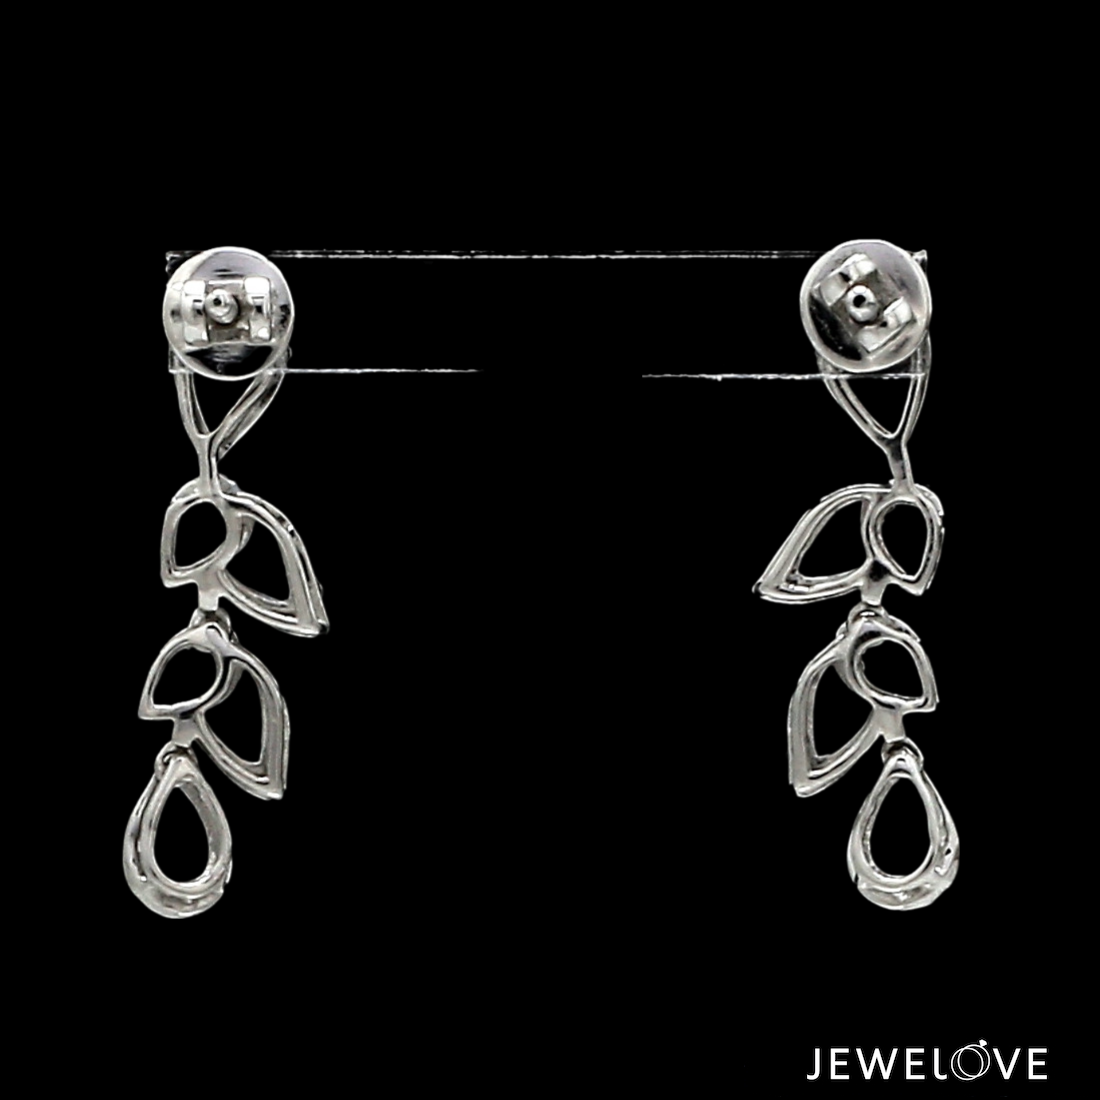 Platinum Evara Diamond Earrings Set JL PT E 341   Jewelove.US